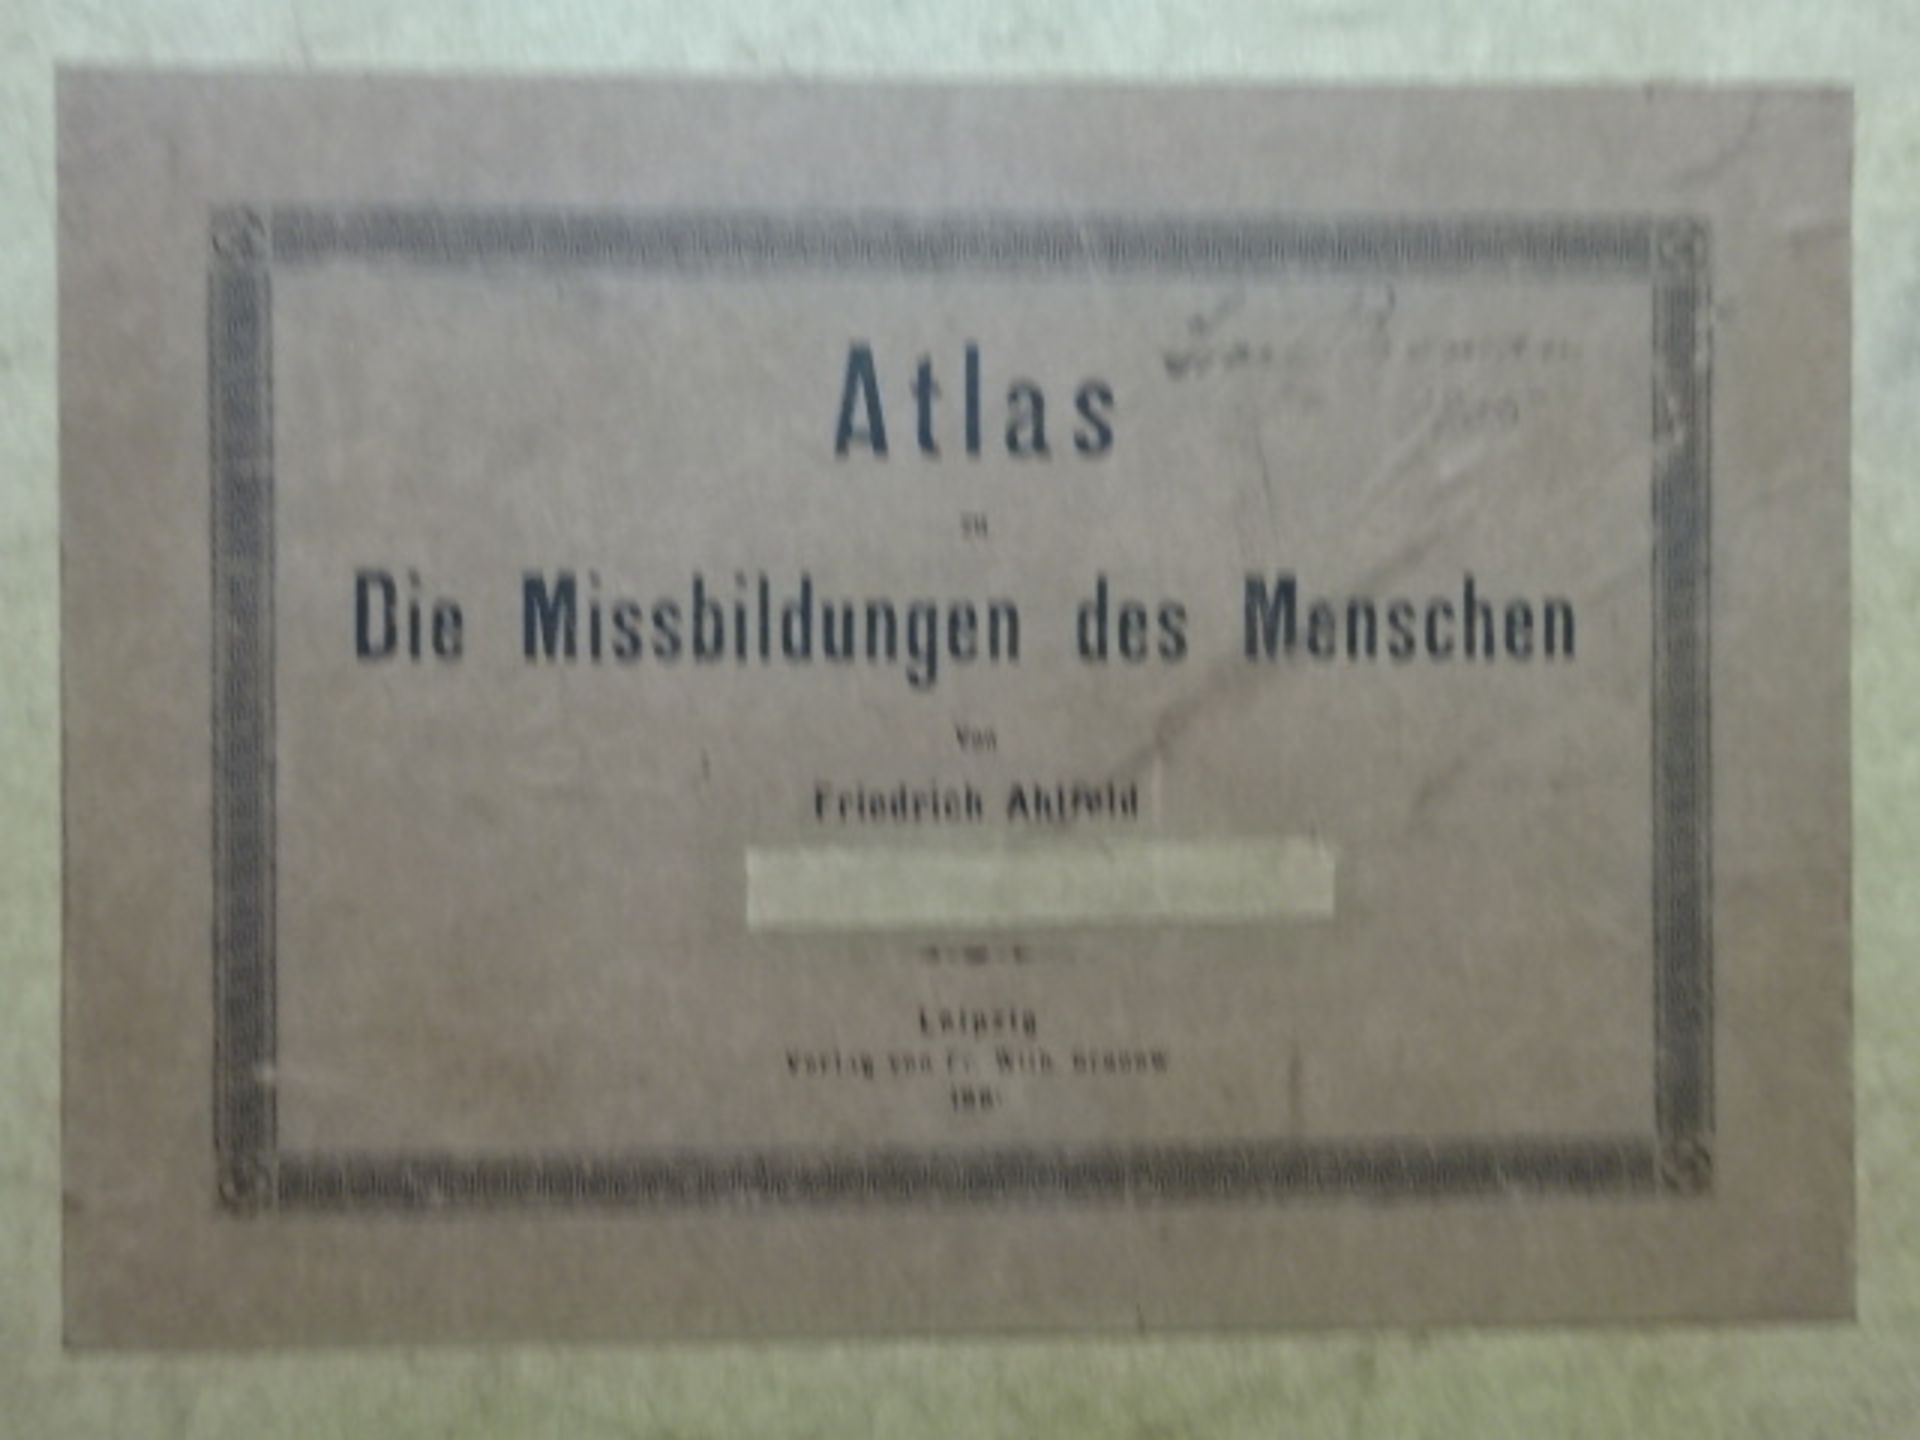 Ahlfeld - Atlas Missbildungen - Image 5 of 6